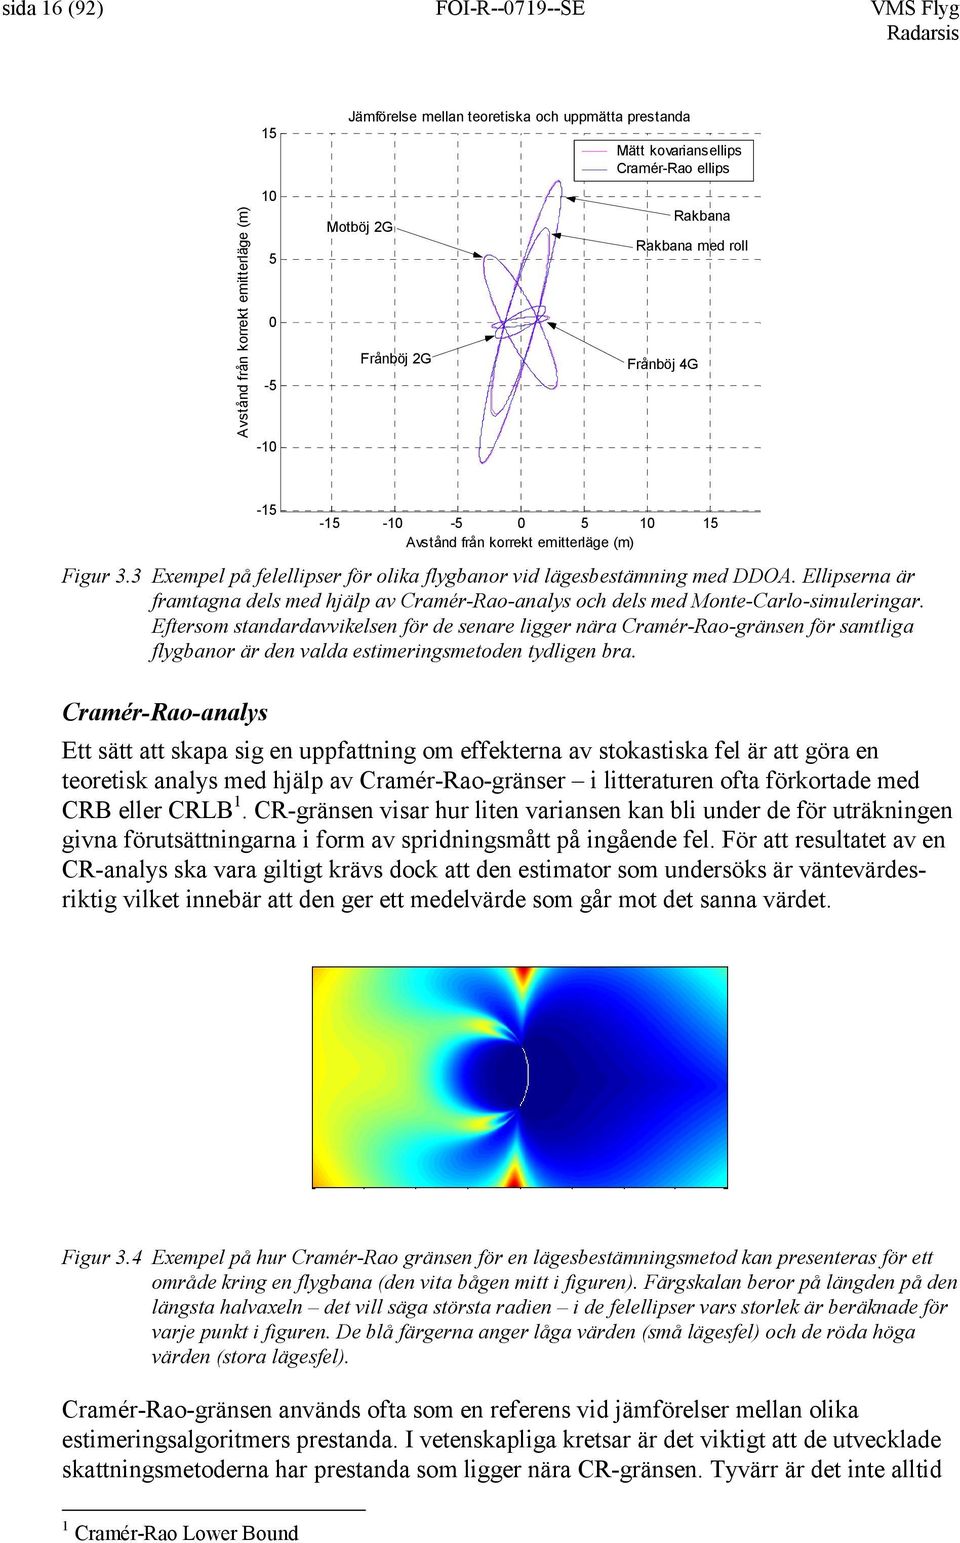 Ellipserna är framtagna dels med hjälp av Cramér-Rao-analys och dels med Monte-Carlo-simuleringar.